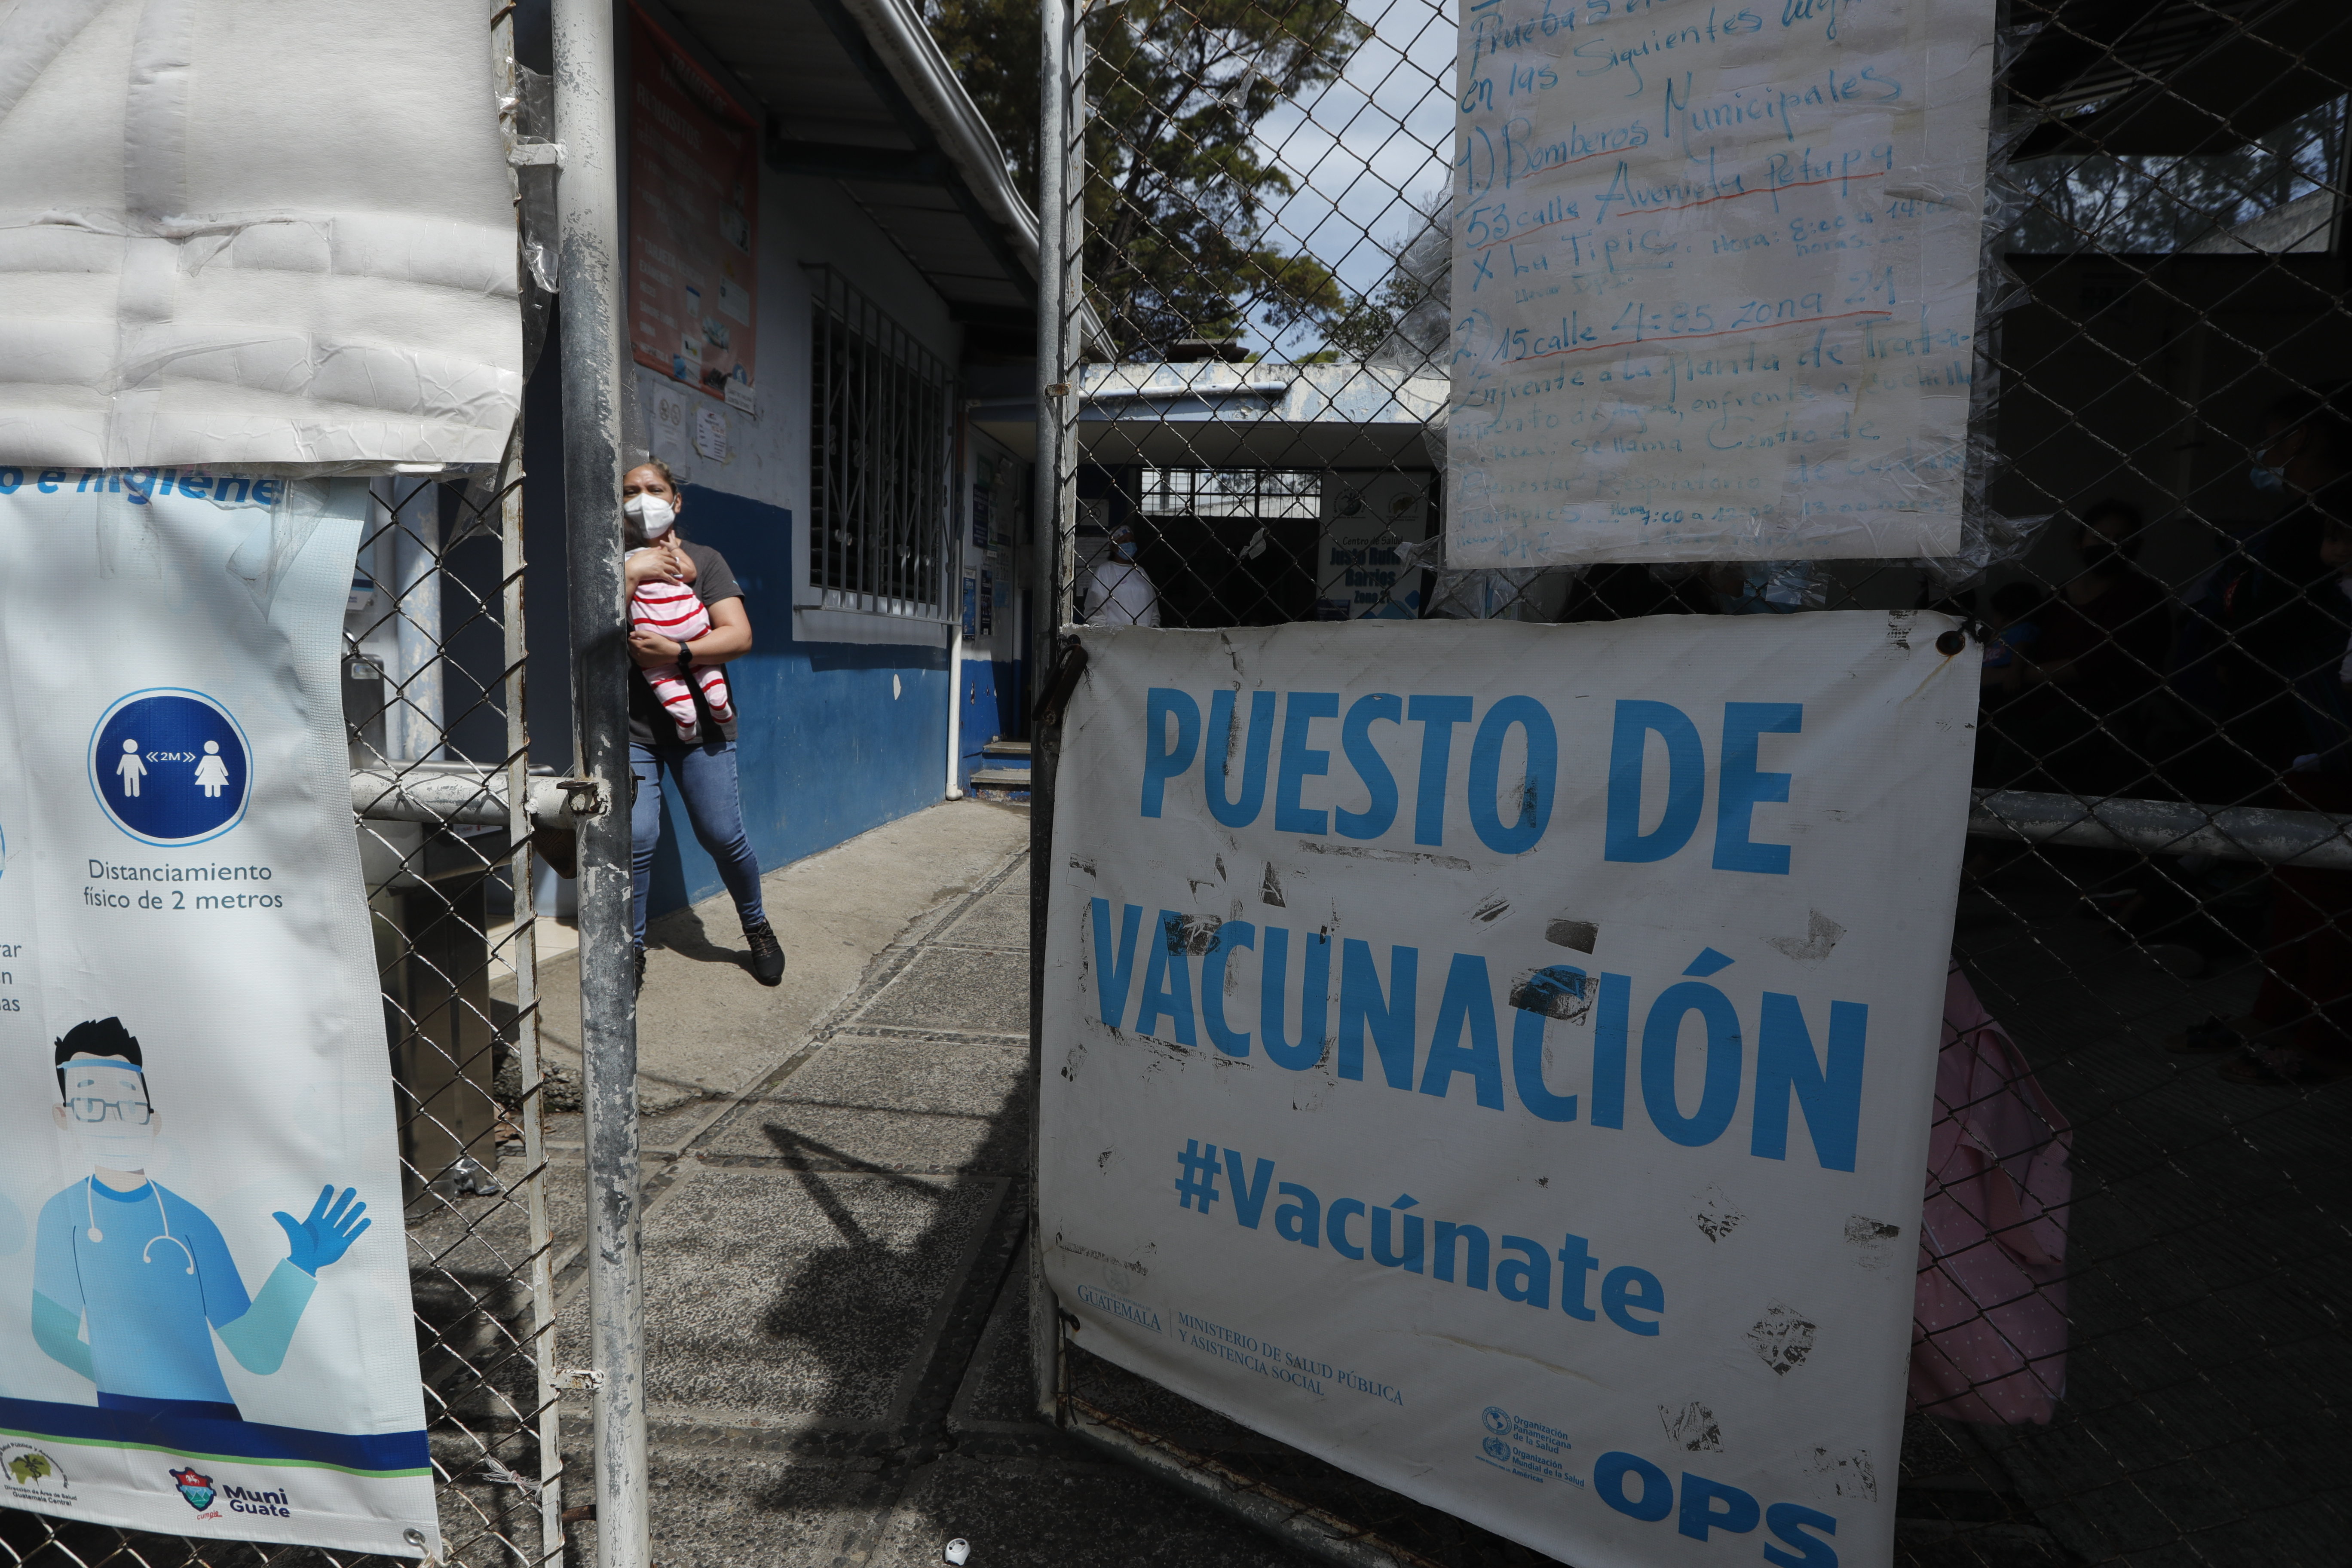 Los problemas del saturado sistema de salud pública se agravan con las limitadas cantidades de pruebas de covid-19 y la falta de vacunas. (Foto Prensa Libre: Esbin García)